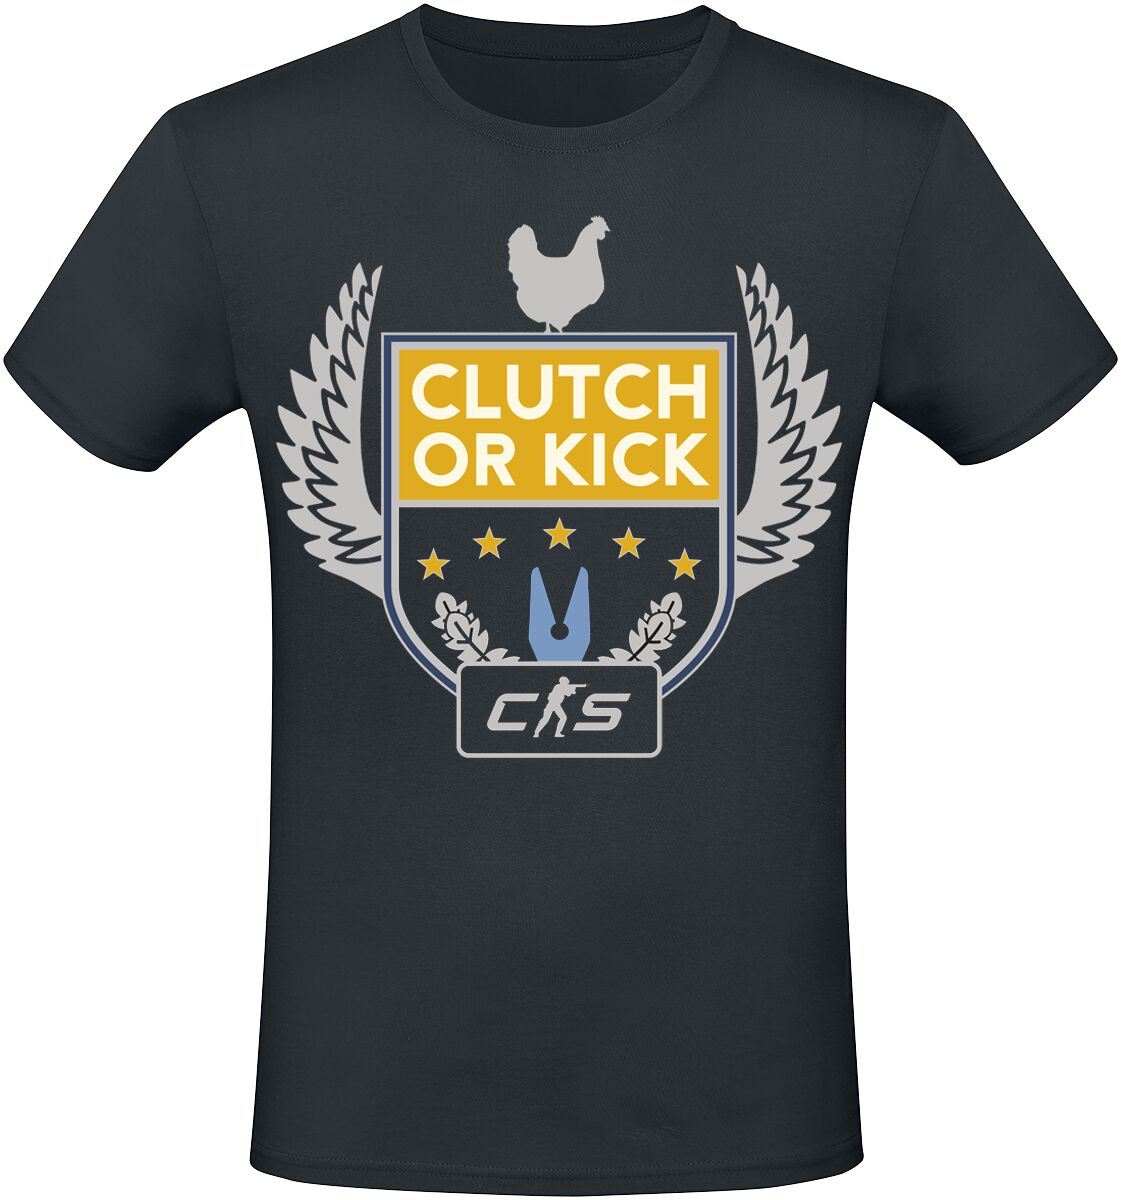 Counter-Strike - Gaming T-Shirt - 2 - Clutch Or Kick - S bis XXL - für Männer - Größe M - schwarz  - EMP exklusives Merchandise!